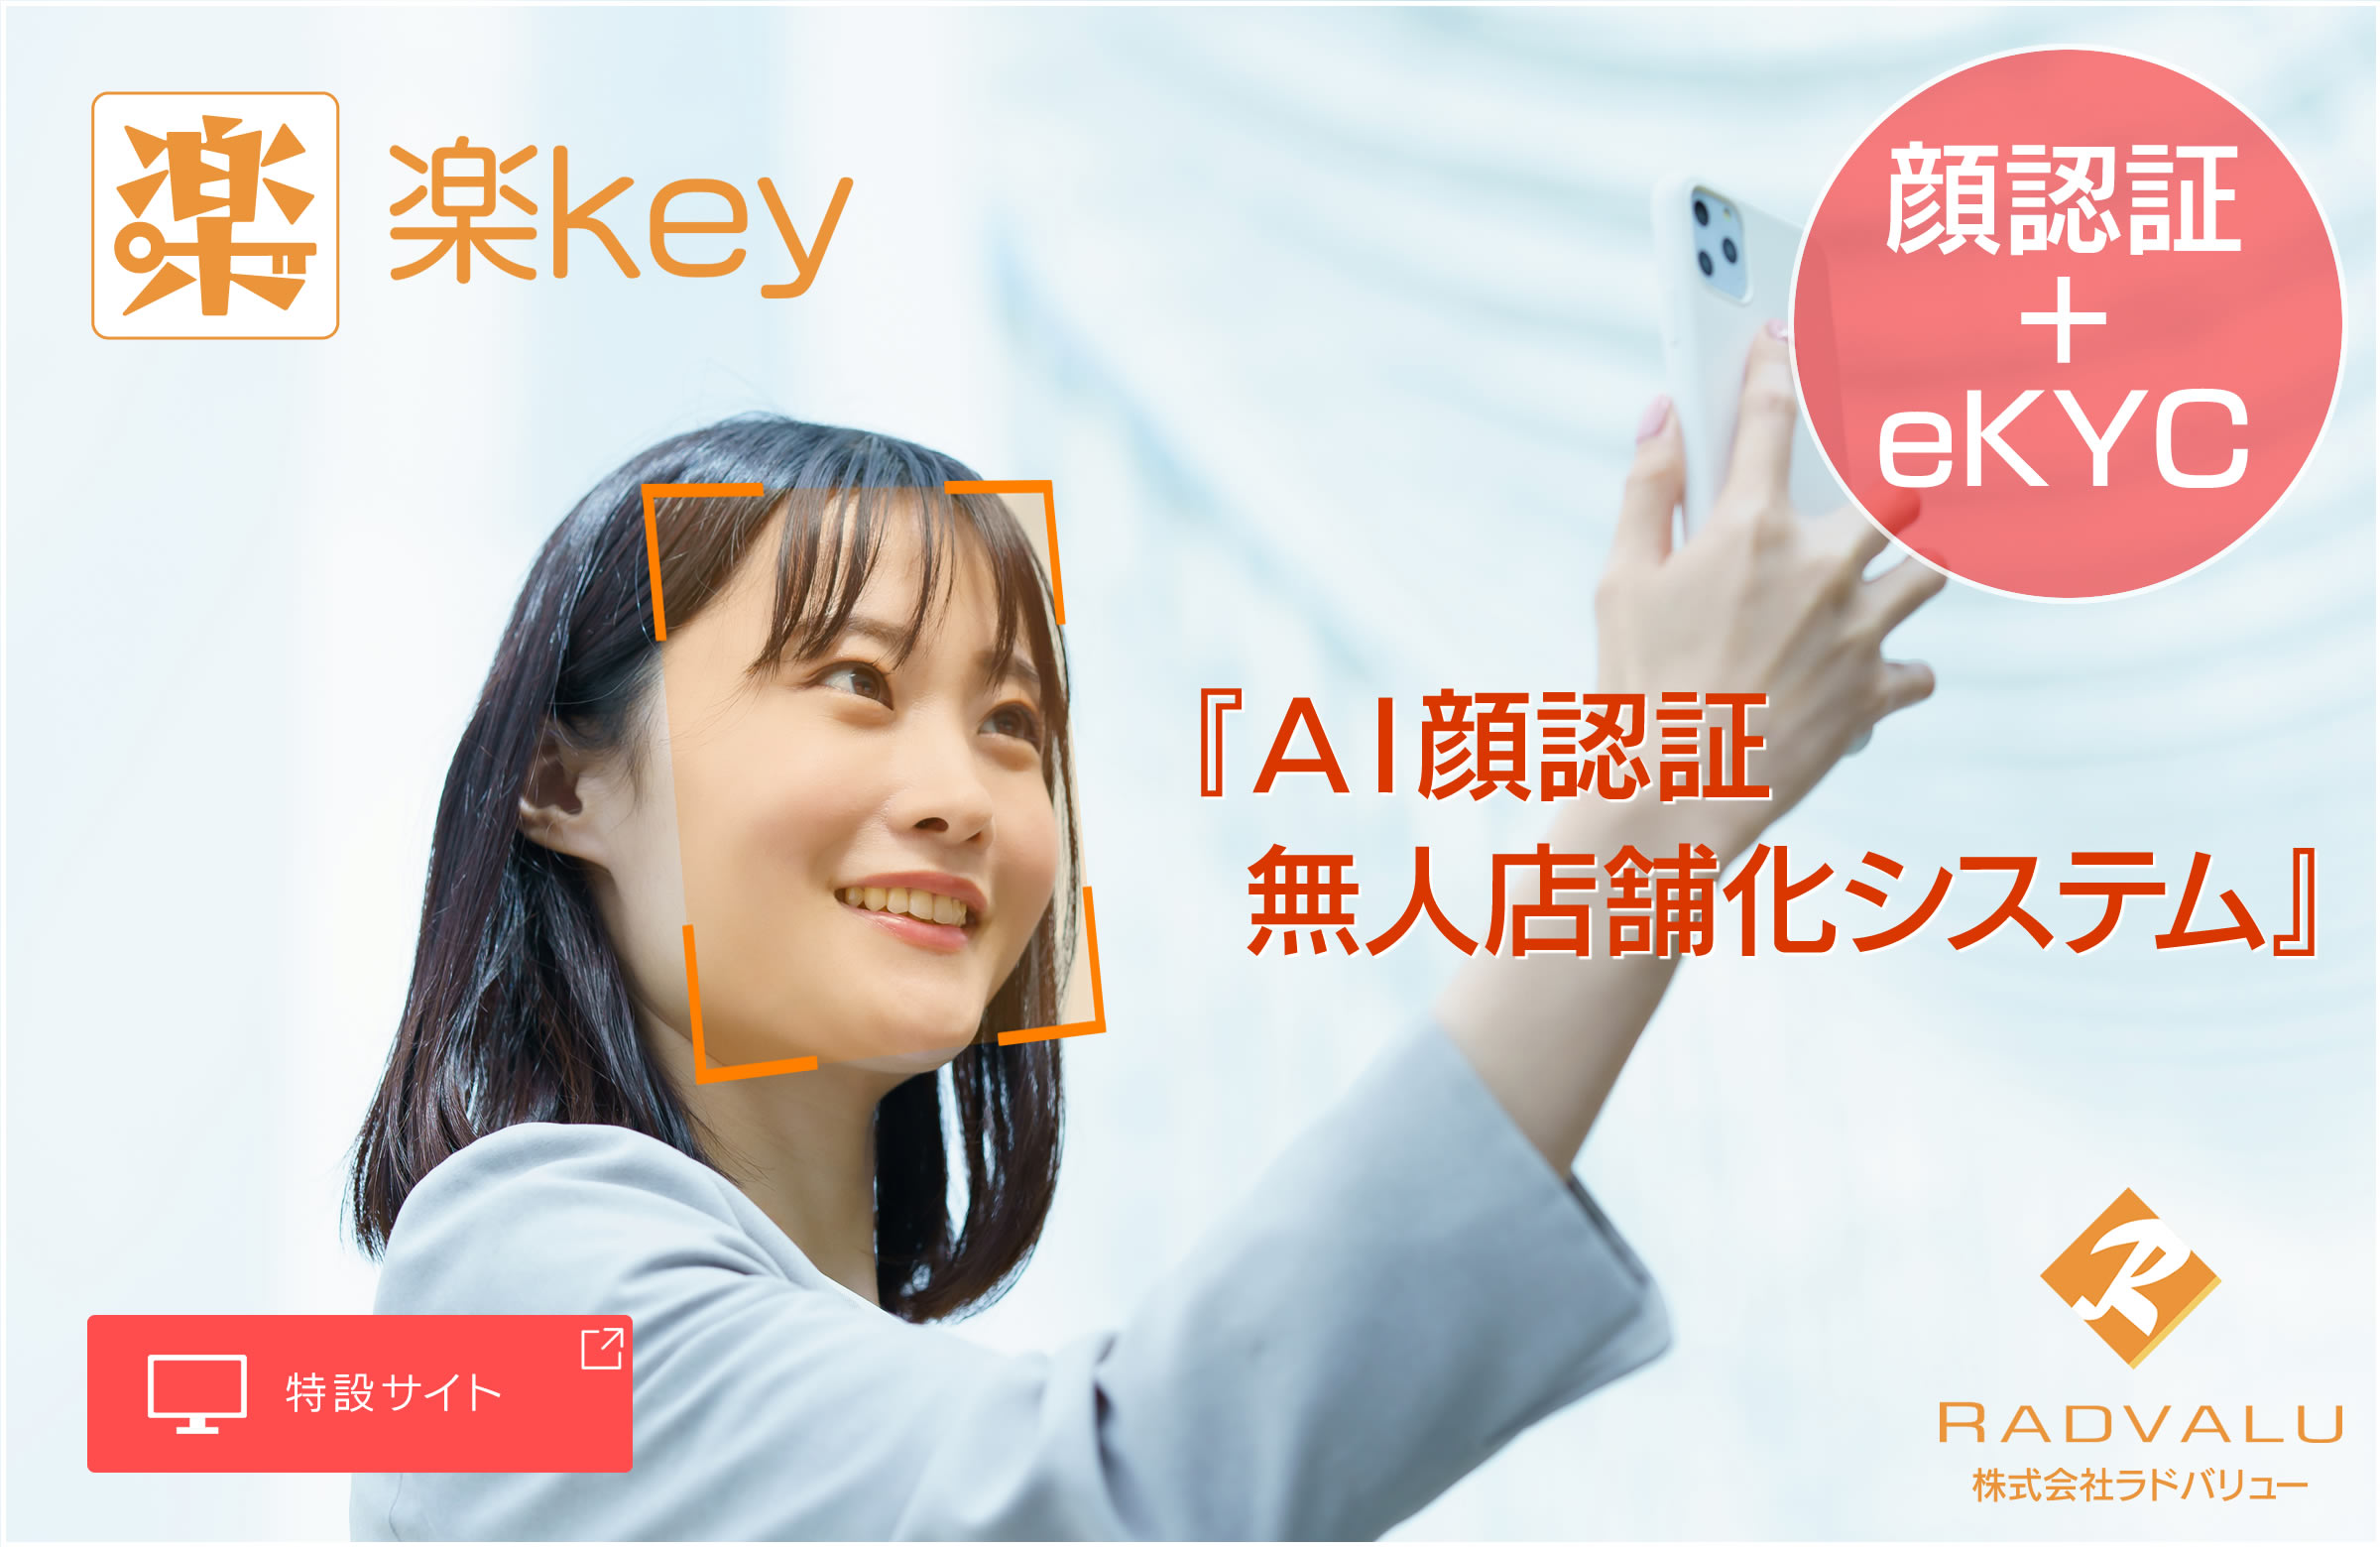 新製品のAI顔認証無人店舗システムの楽keyの特設サイトへの写真